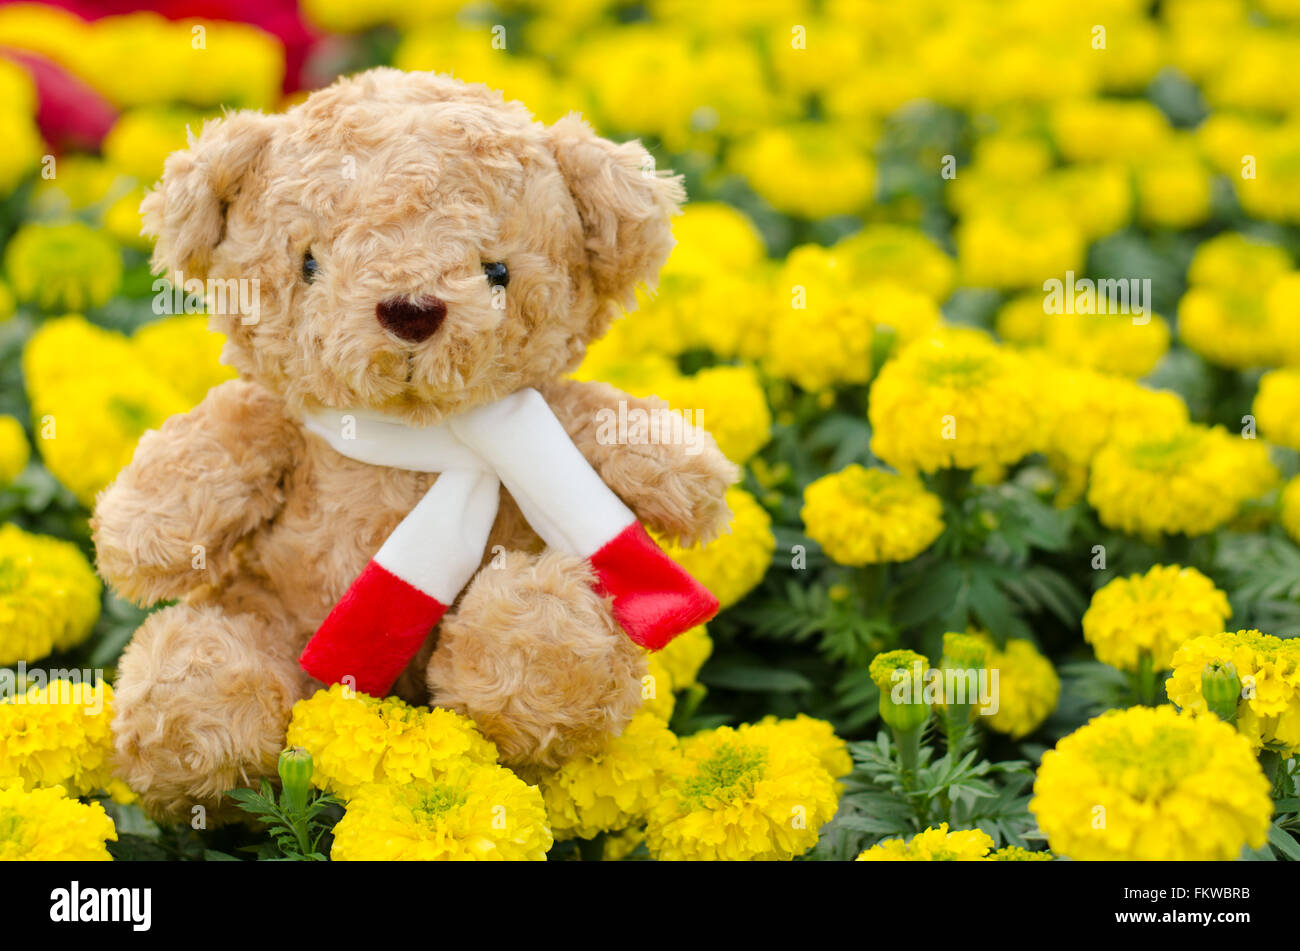 Teddy bear in flower garden Stock Photo